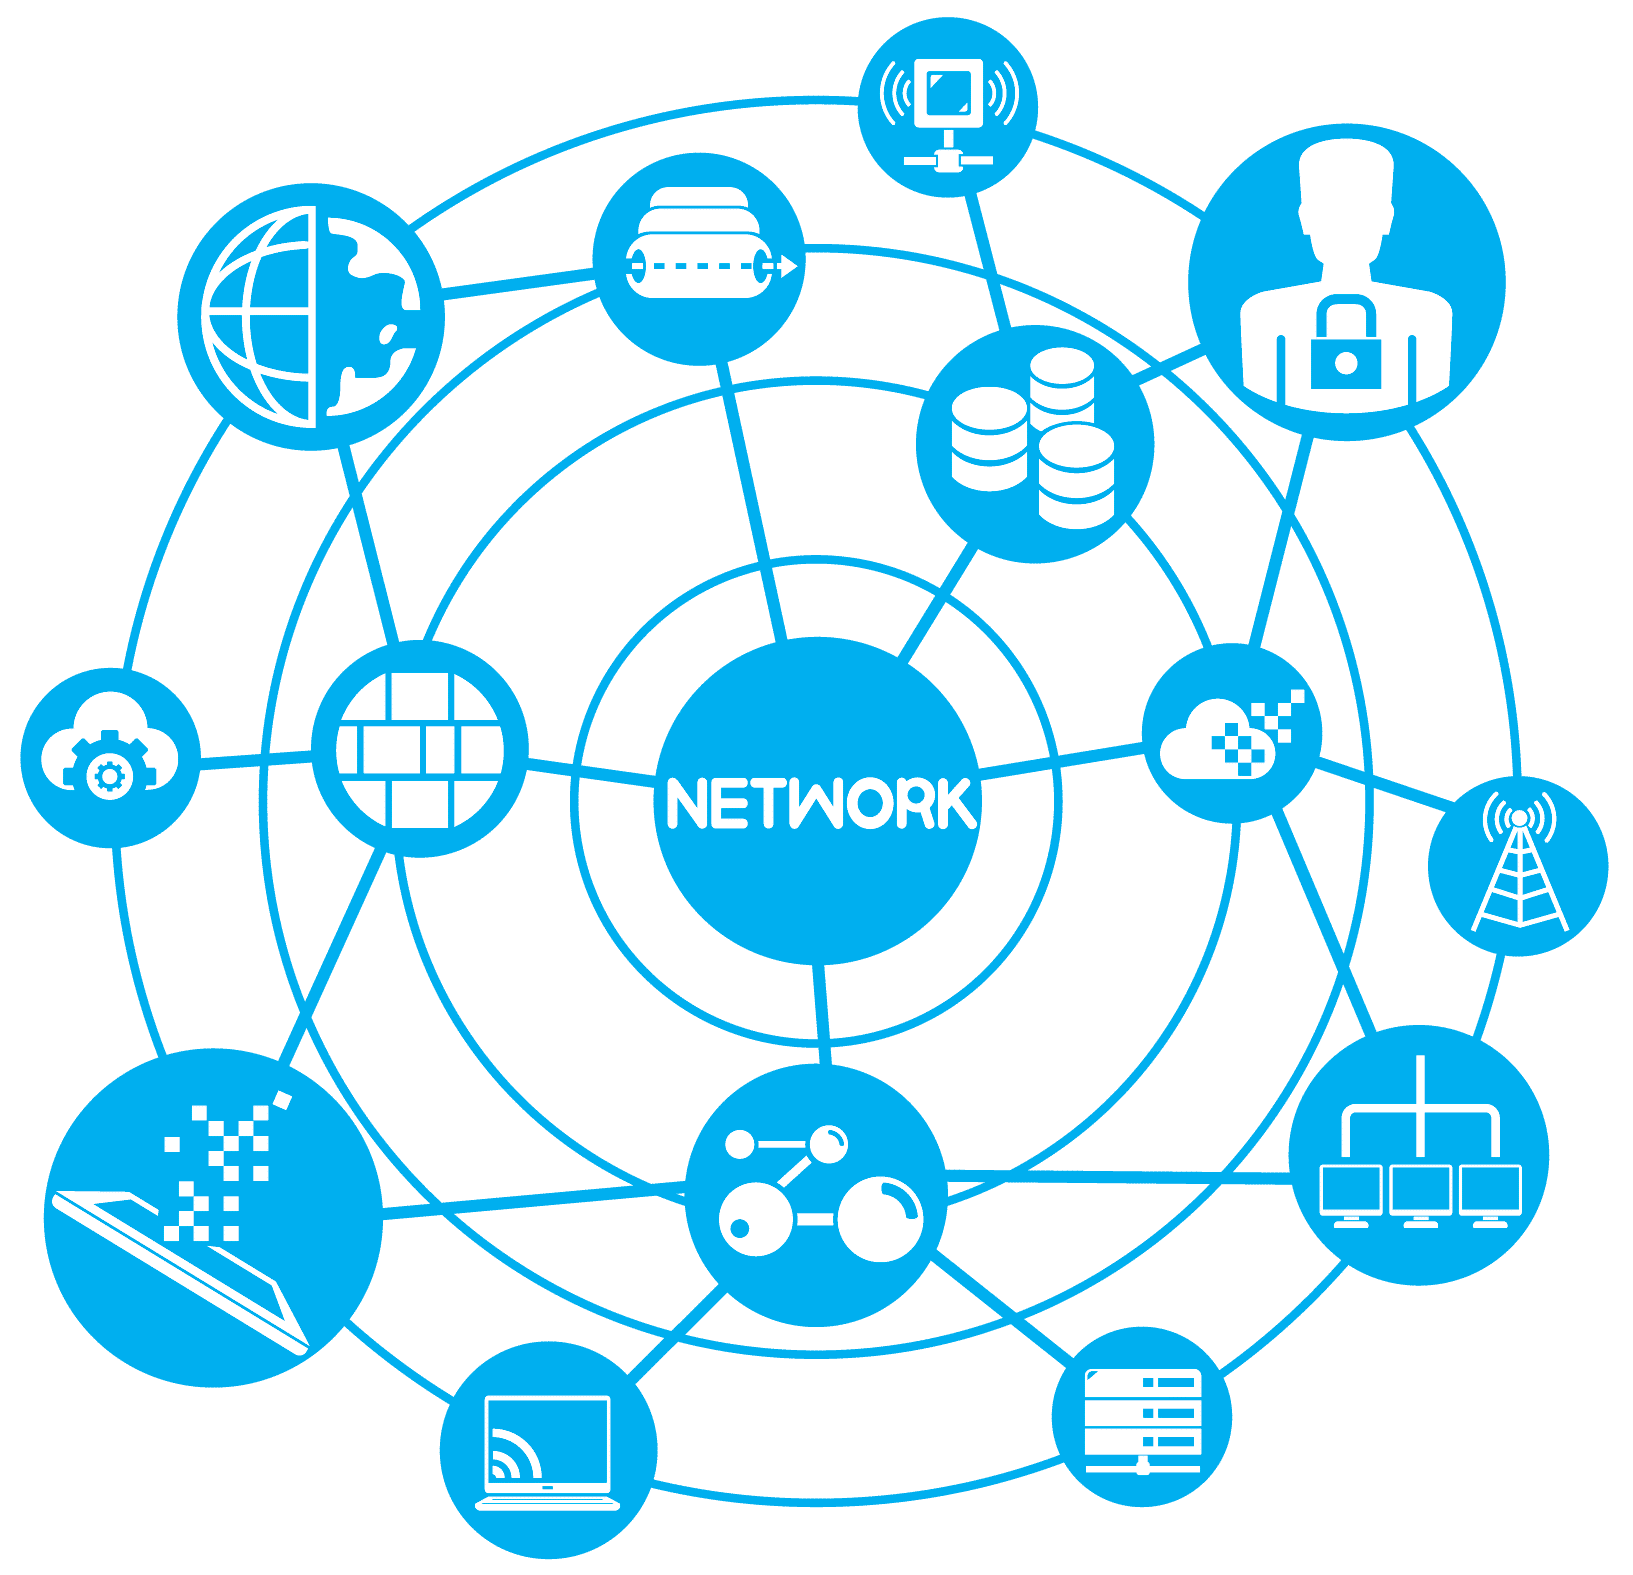 تعريف الشبكات او ال(Network)